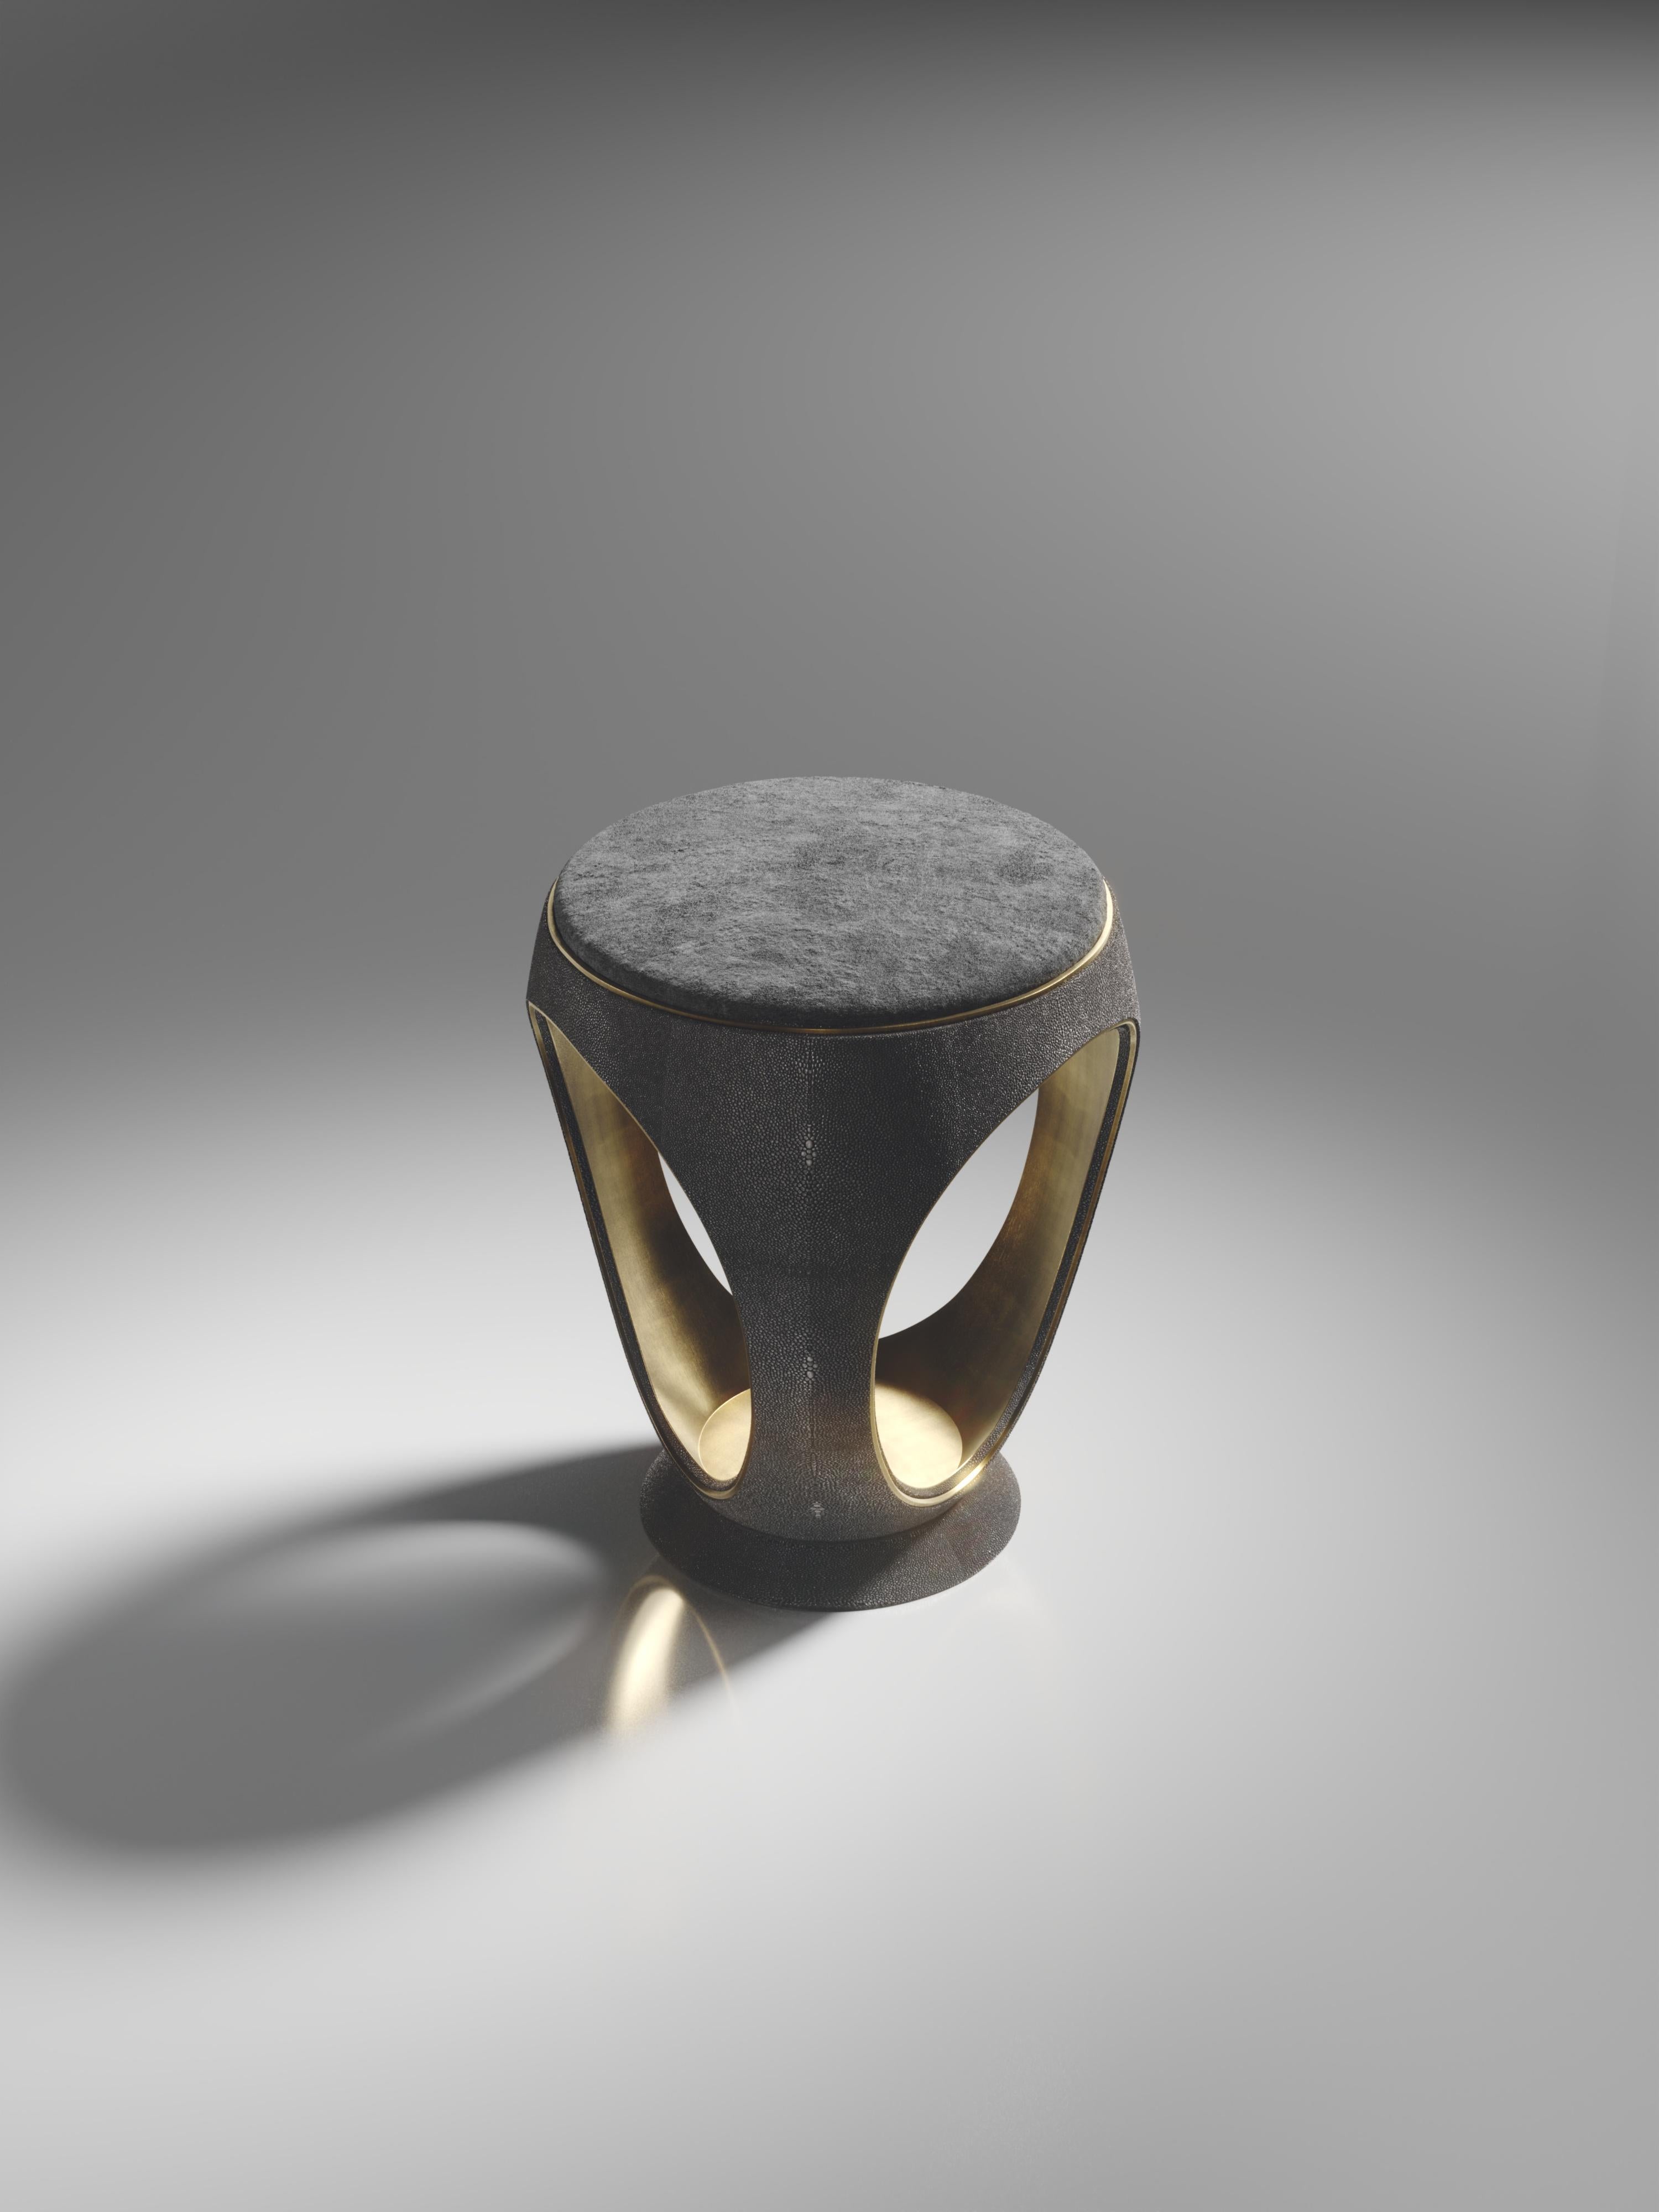 Le tabouret à anneaux en galuchat noir est l'une des pièces les plus emblématiques de la Collection R&Y Augousti. De forme sculpturale et semblable à un bijou, cette pièce a été remise au goût du jour avec un discret détail d'échancrure en laiton